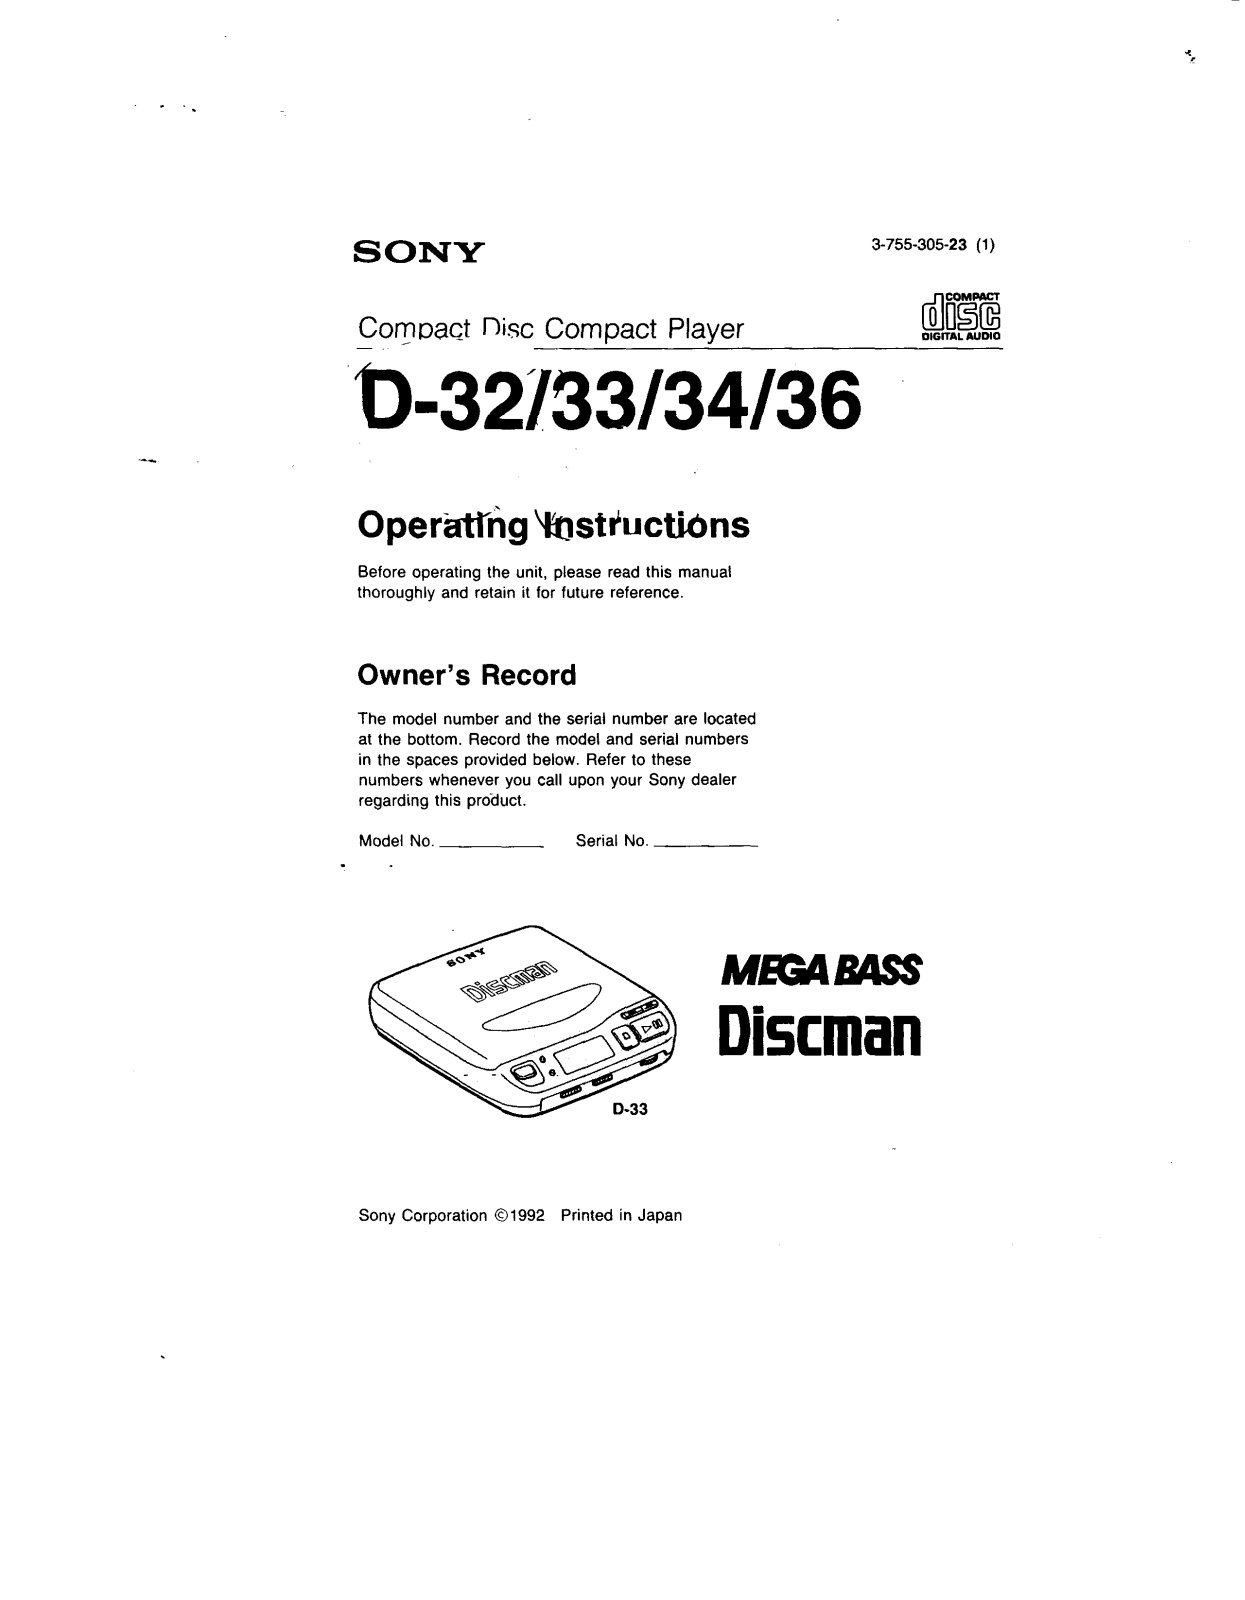 Sony D32, D33, D34, D36 Operating Instructions